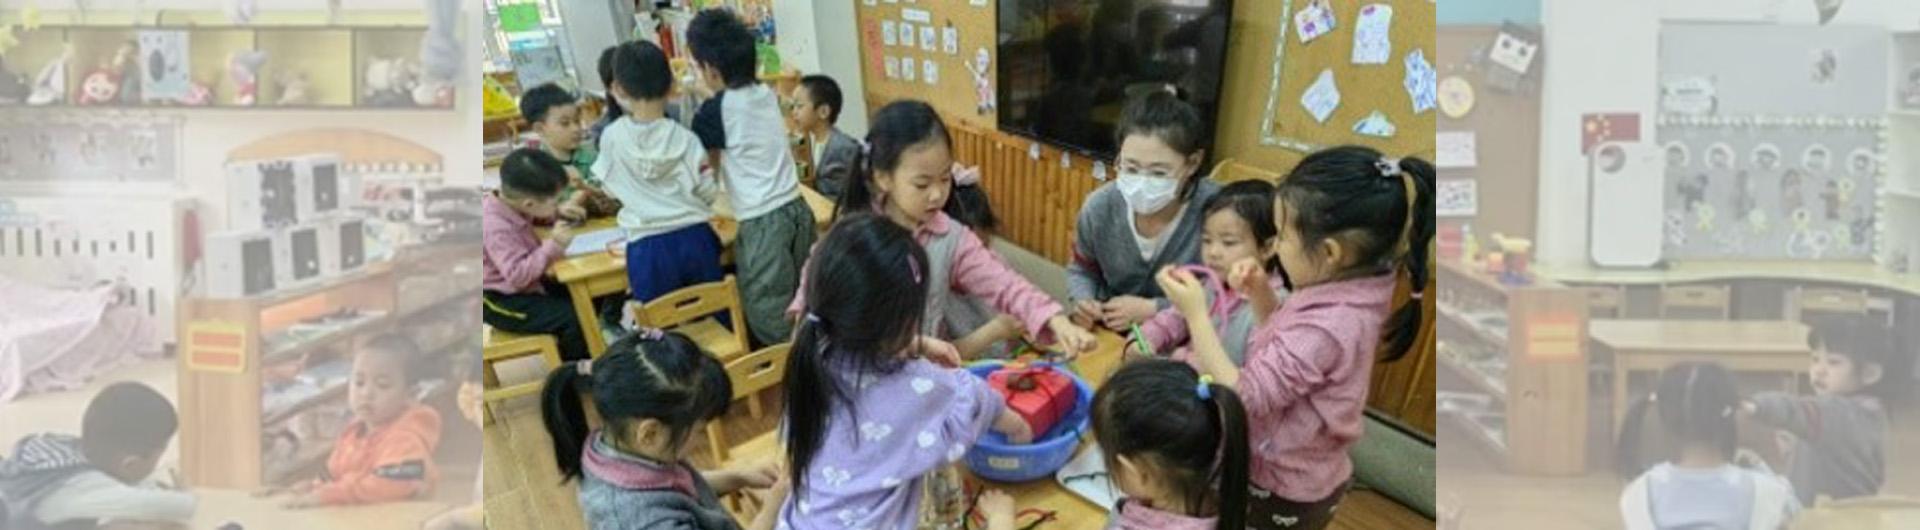 children in a classroom in Beijing